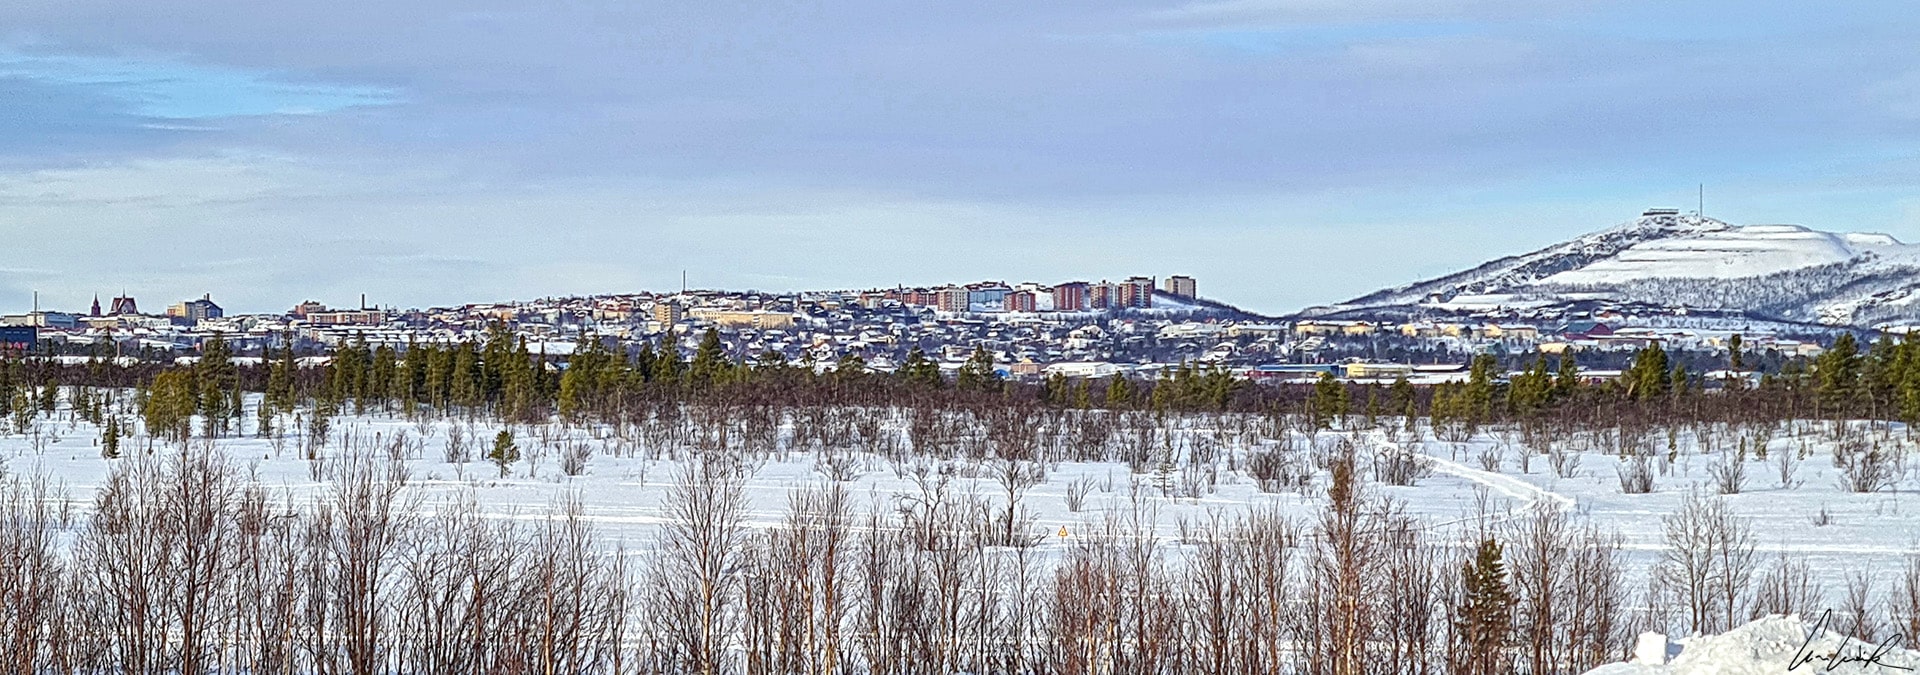 Kiruna est une petite ville minière située à 145 kilomètres au nord du Cercle Polaire en Laponie suédoise. Elle abrite la mine souterraine de magnétite la plus importante au monde